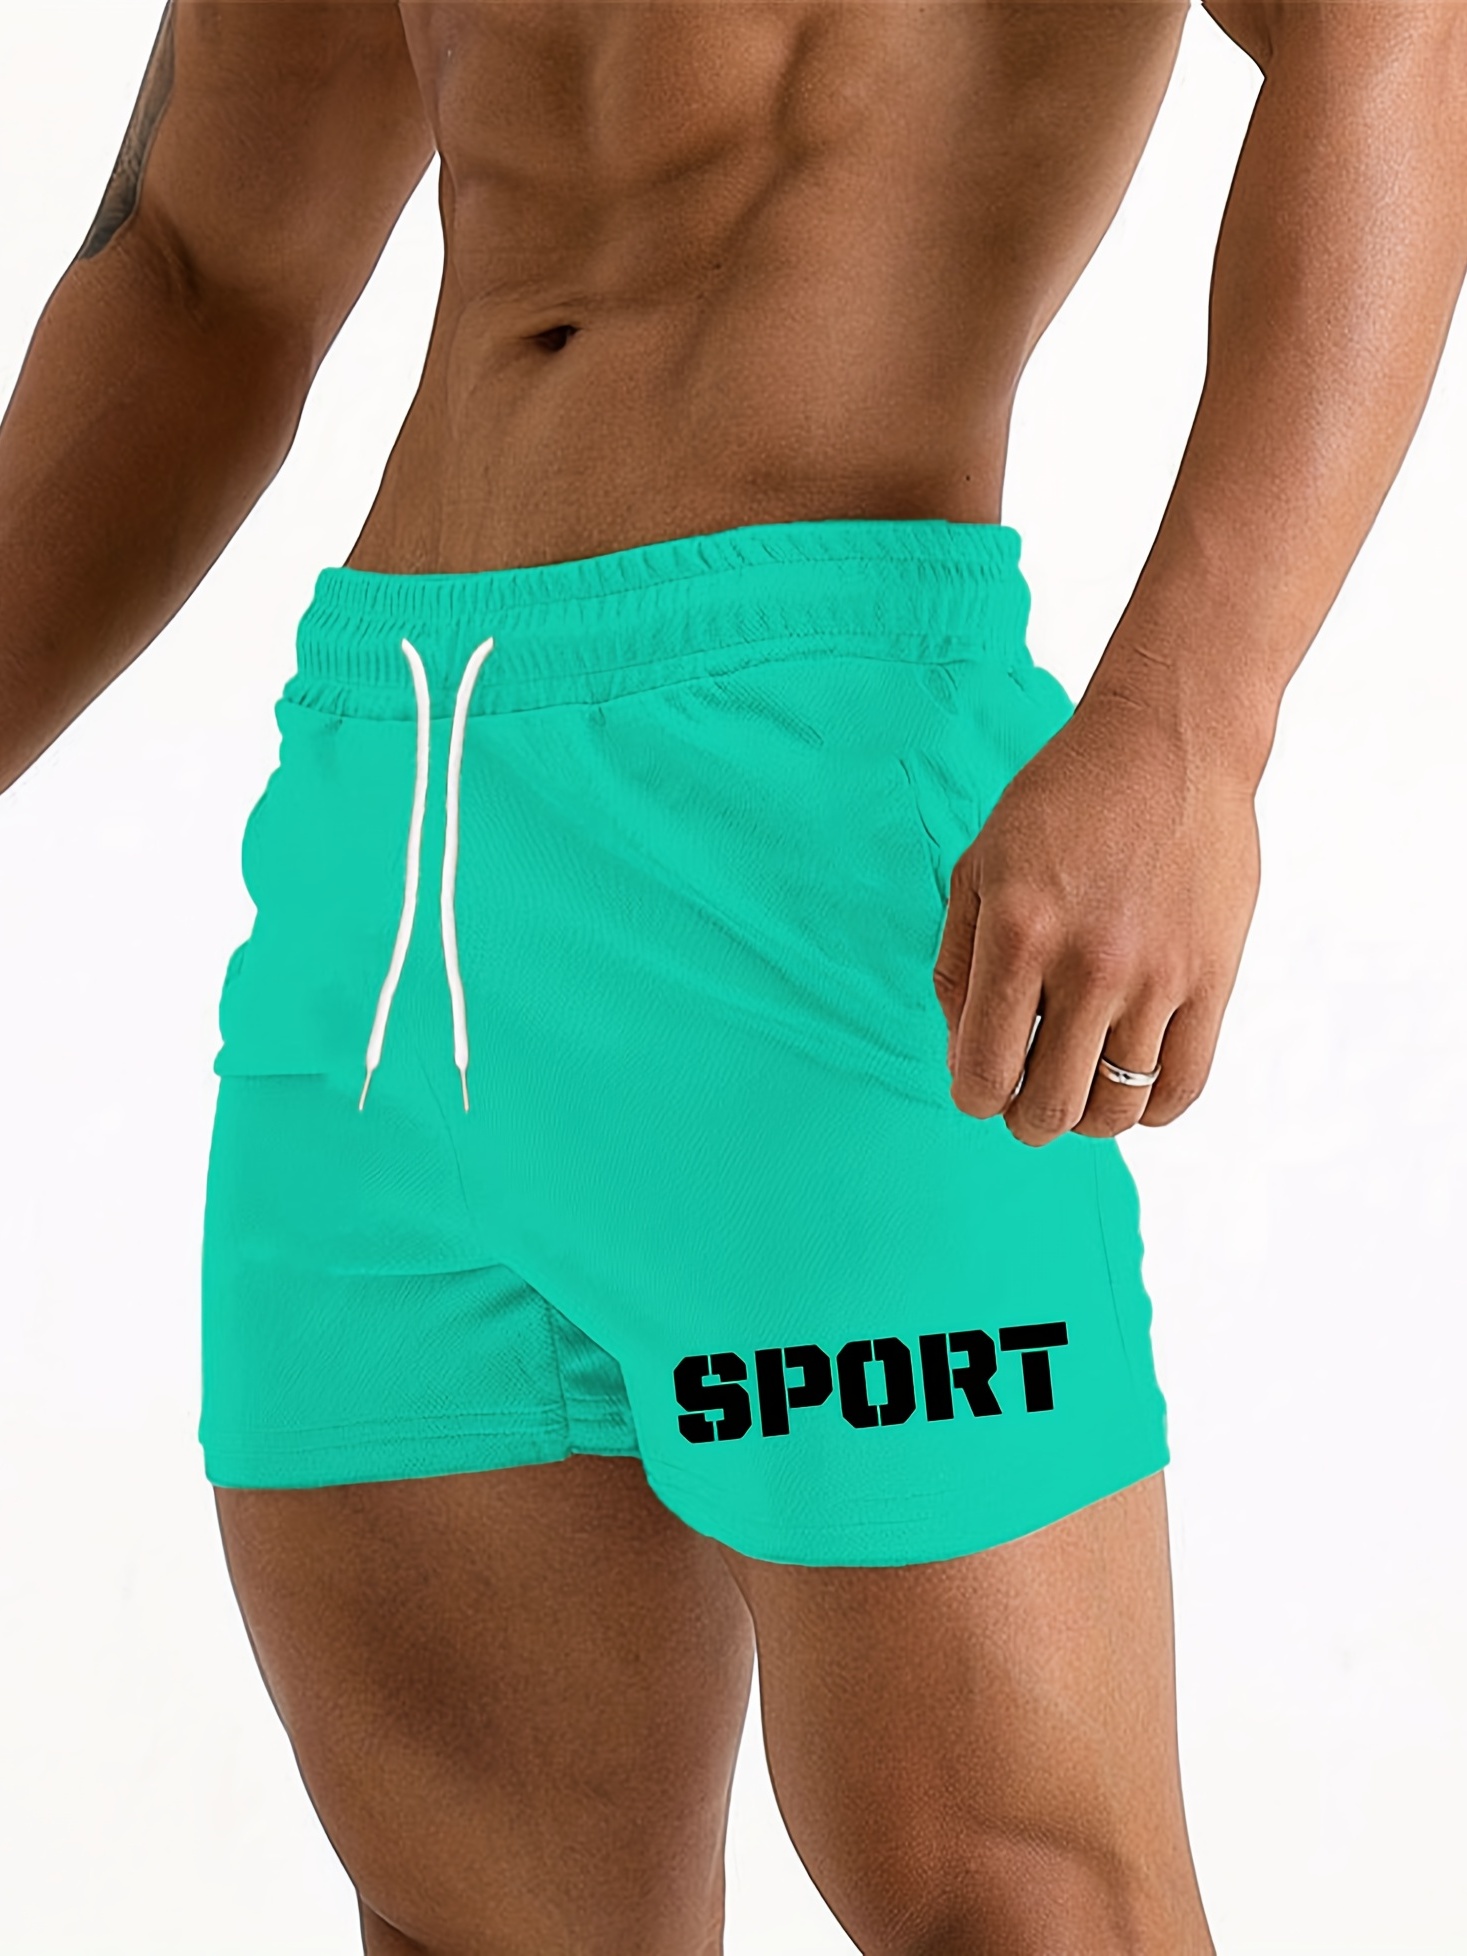 Pantalones cortos deportivos y de entrenamiento para hombre